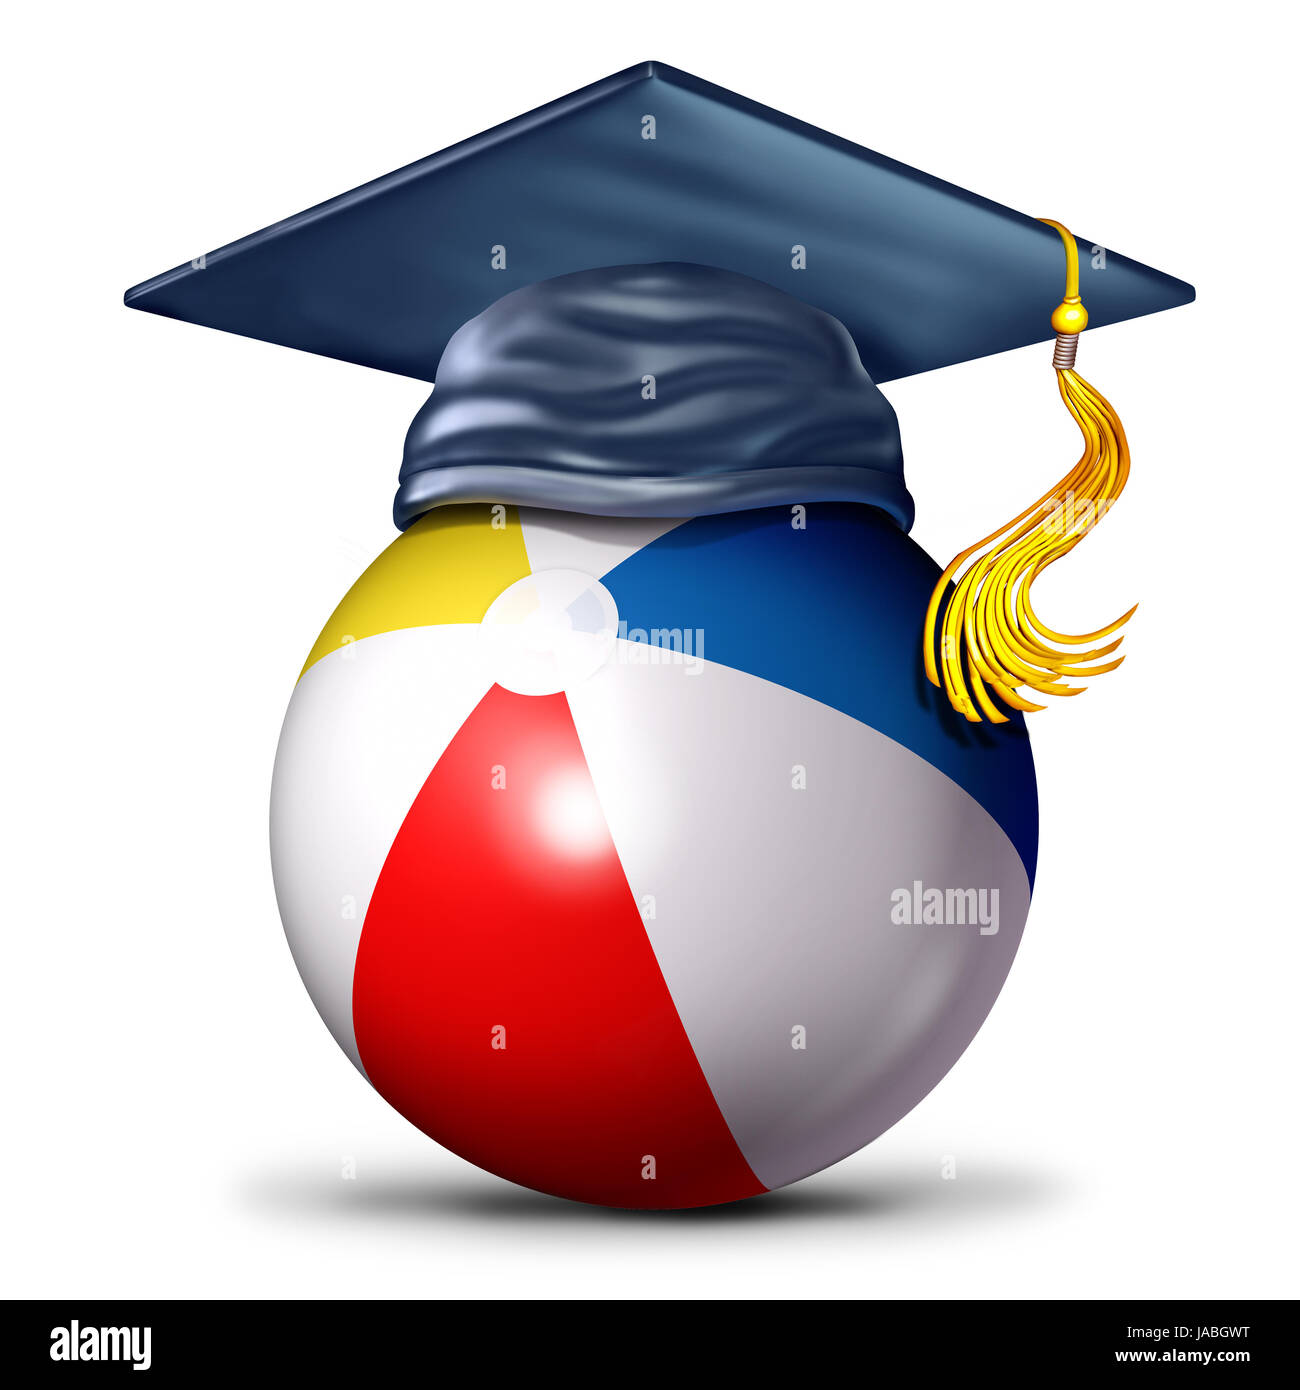 Símbolo de la escuela de verano como una pelota de playa con mortero de la PAC como una enseñanza y aprendizaje durante el verano icono como una ilustración 3D. Foto de stock